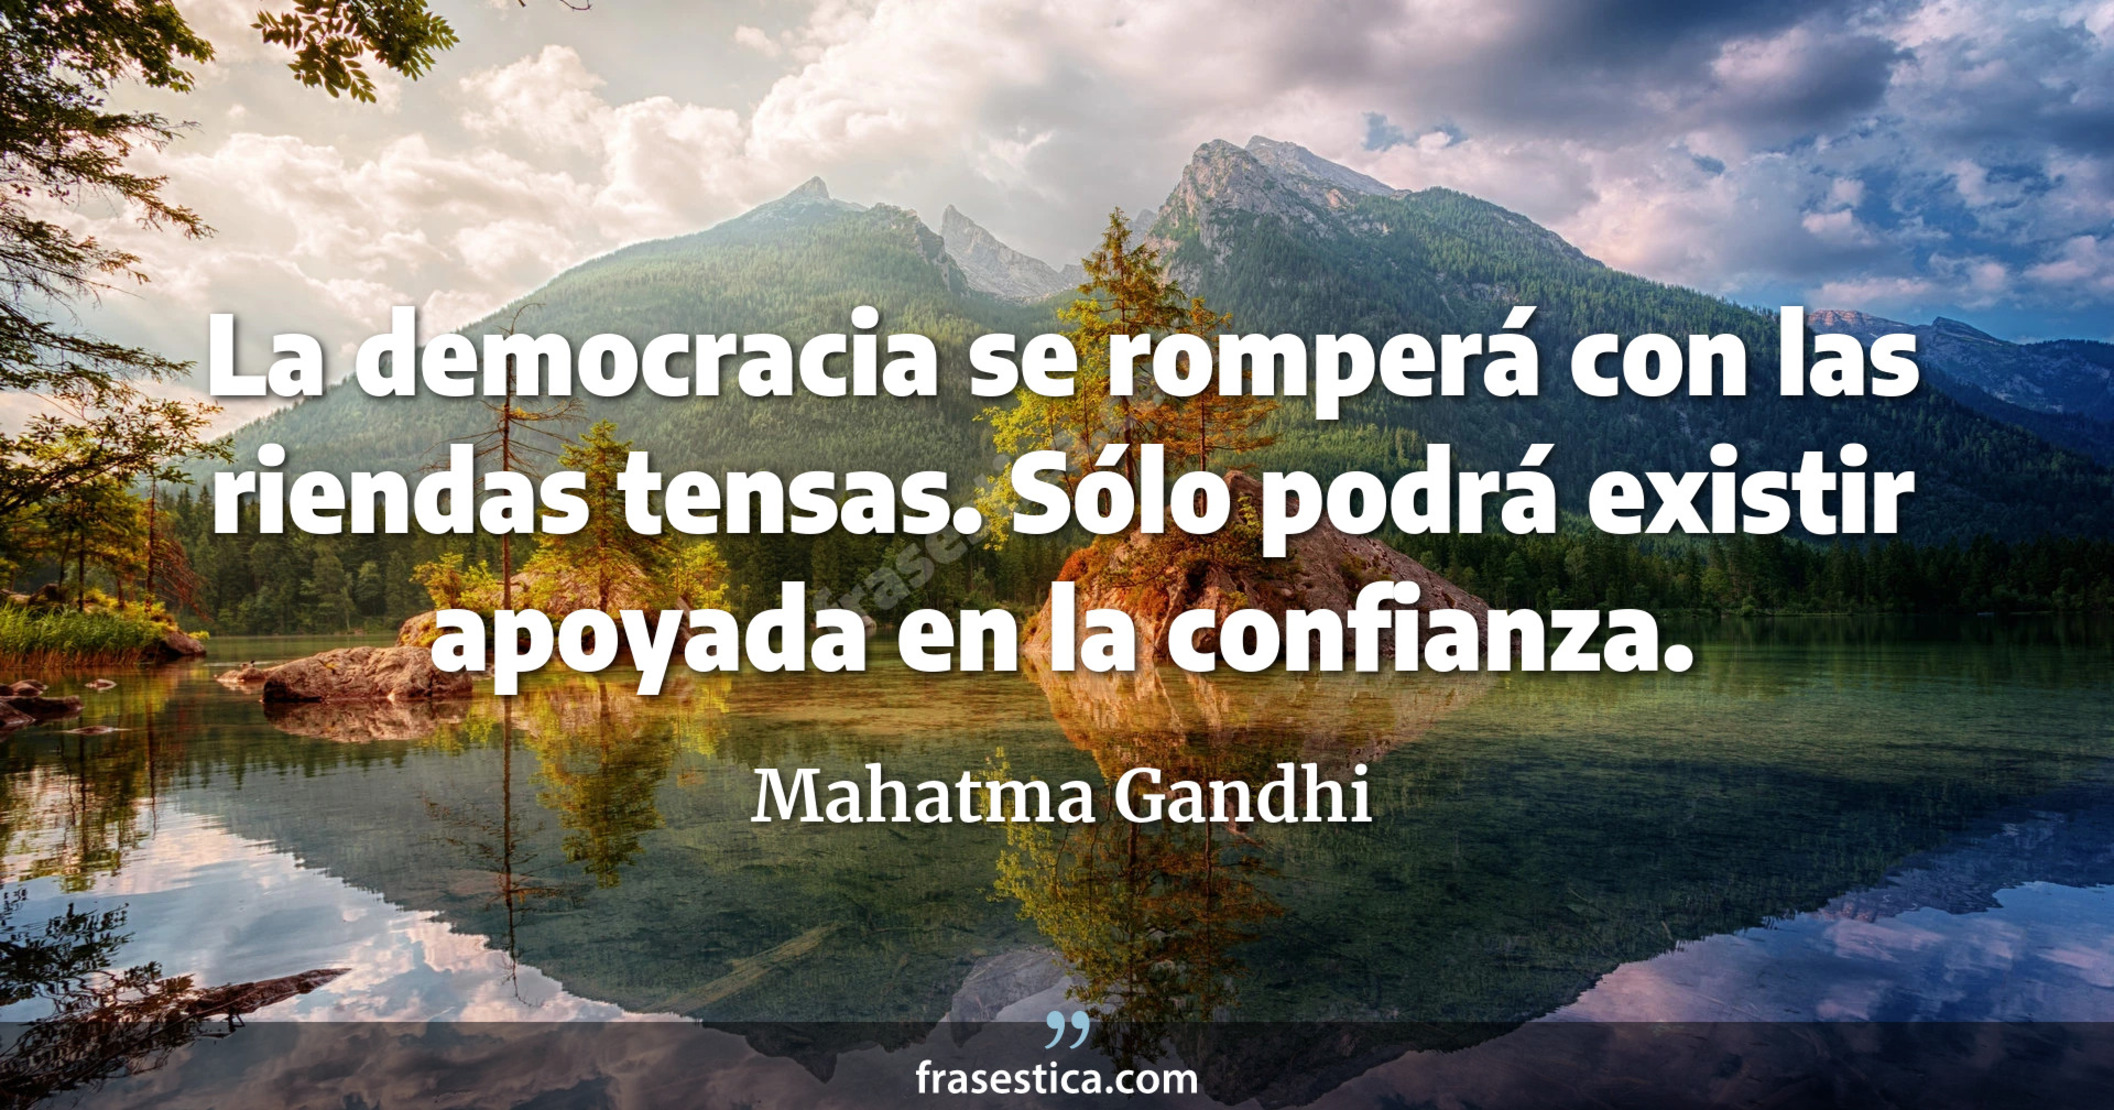 La democracia se romperá con las riendas tensas. Sólo podrá existir apoyada en la confianza. - Mahatma Gandhi